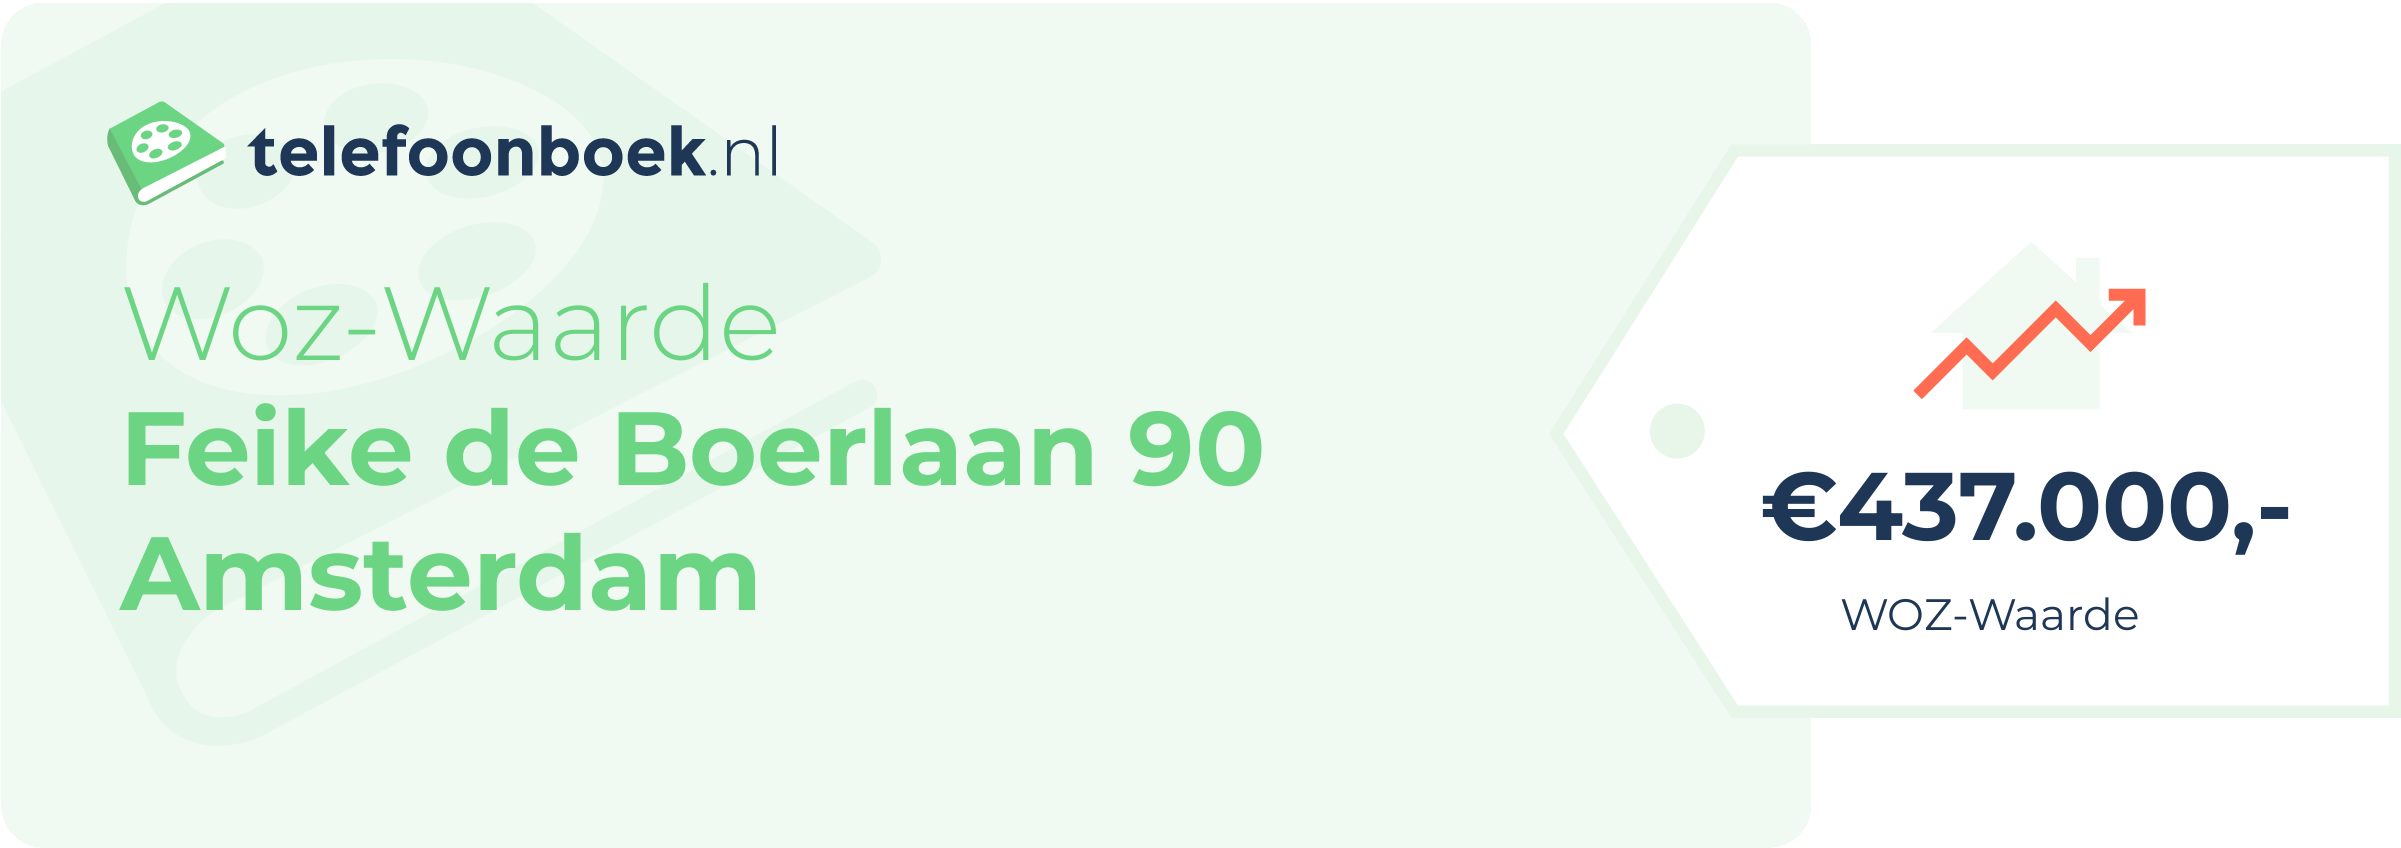 WOZ-waarde Feike De Boerlaan 90 Amsterdam